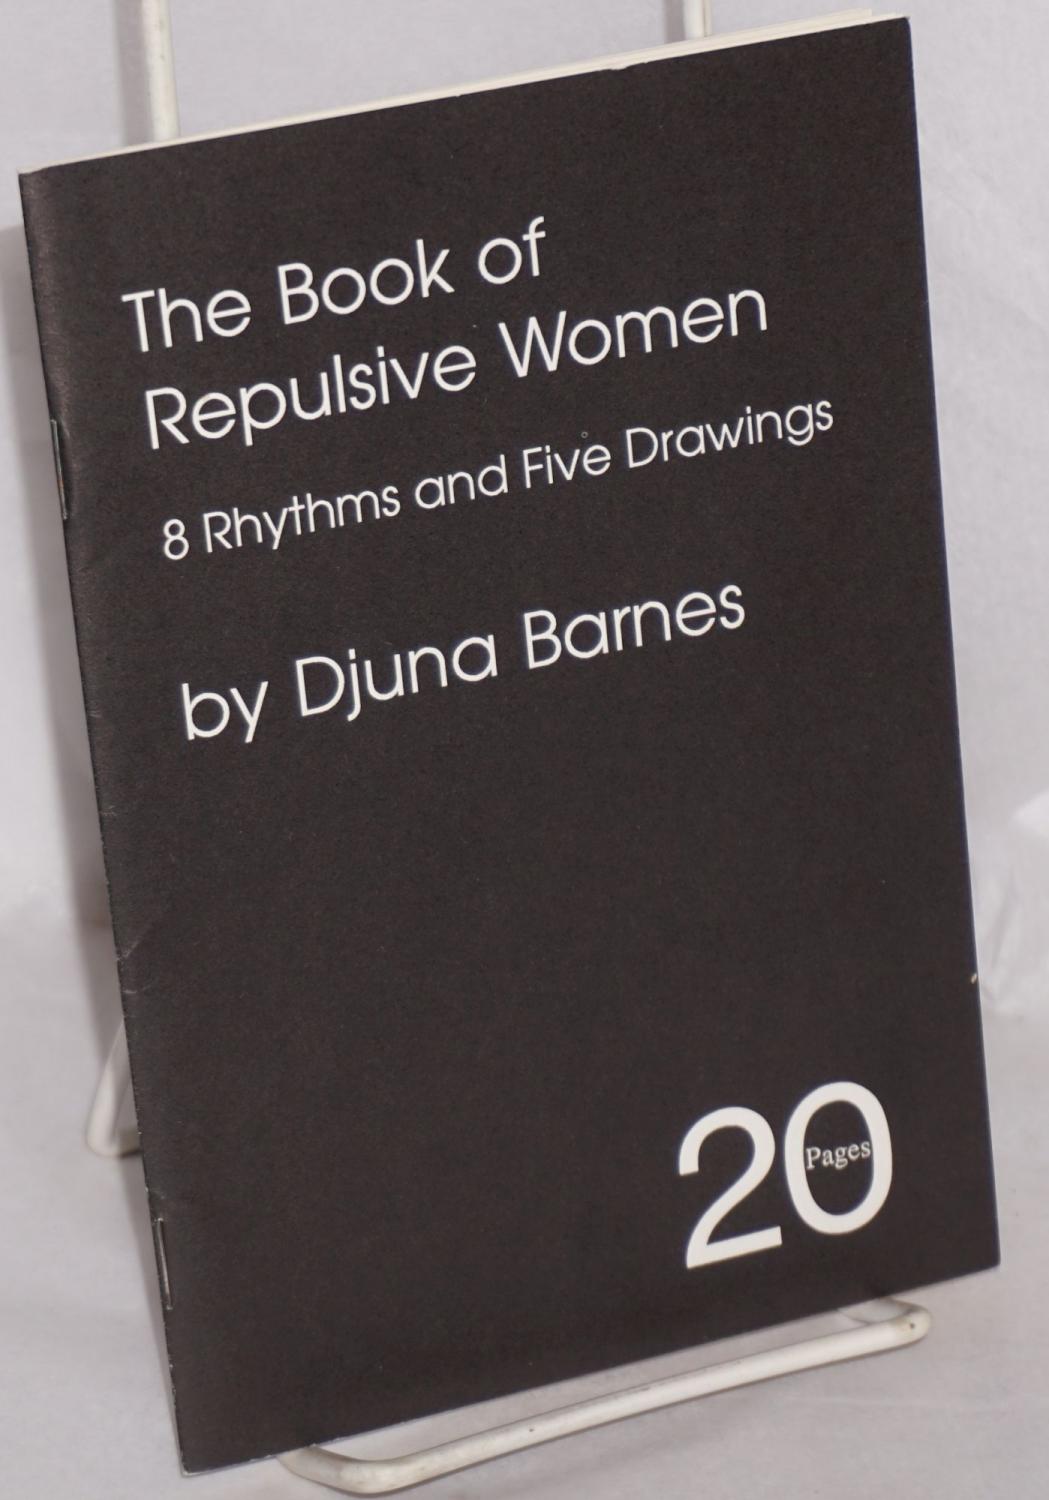 The Book of Repulsive Women: 8 rhythms and five drawings - Barnes, Djuna